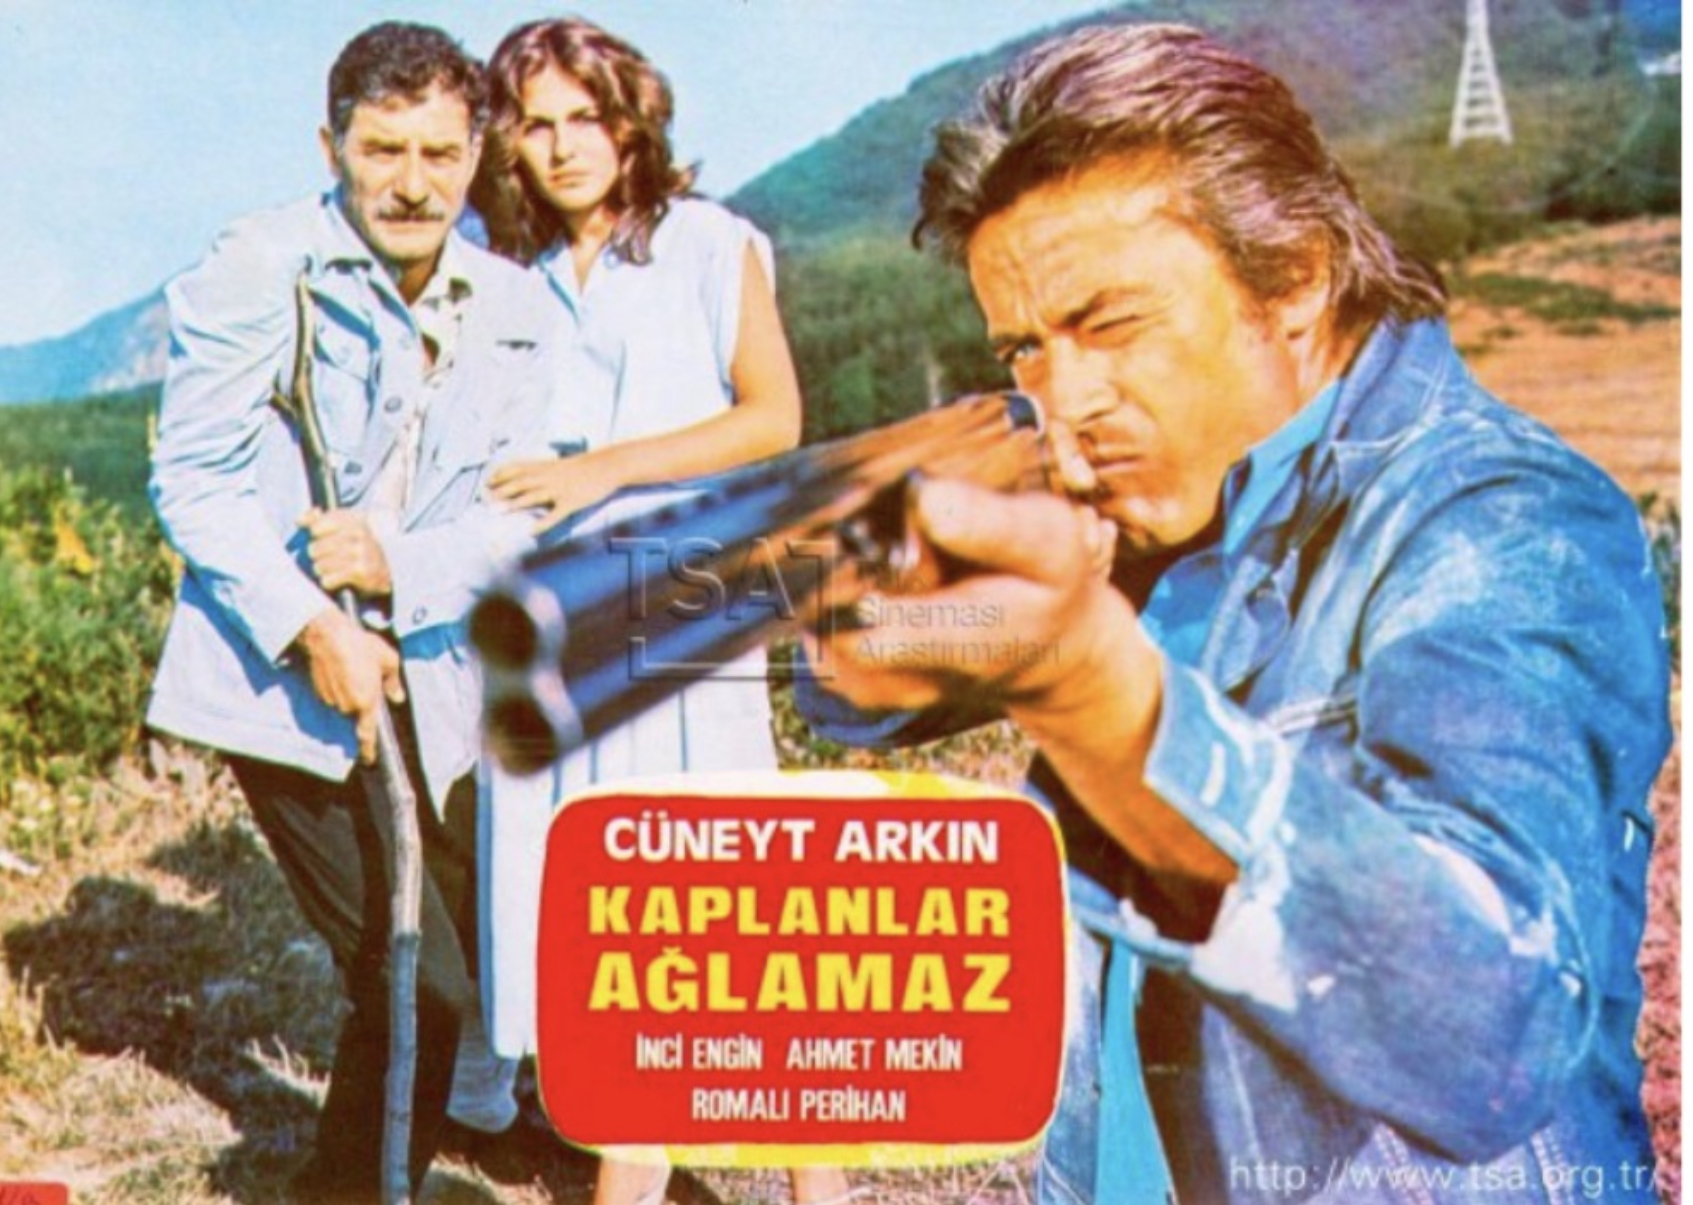 Kaplanlar Aglamaz (1978) Screenshot 4